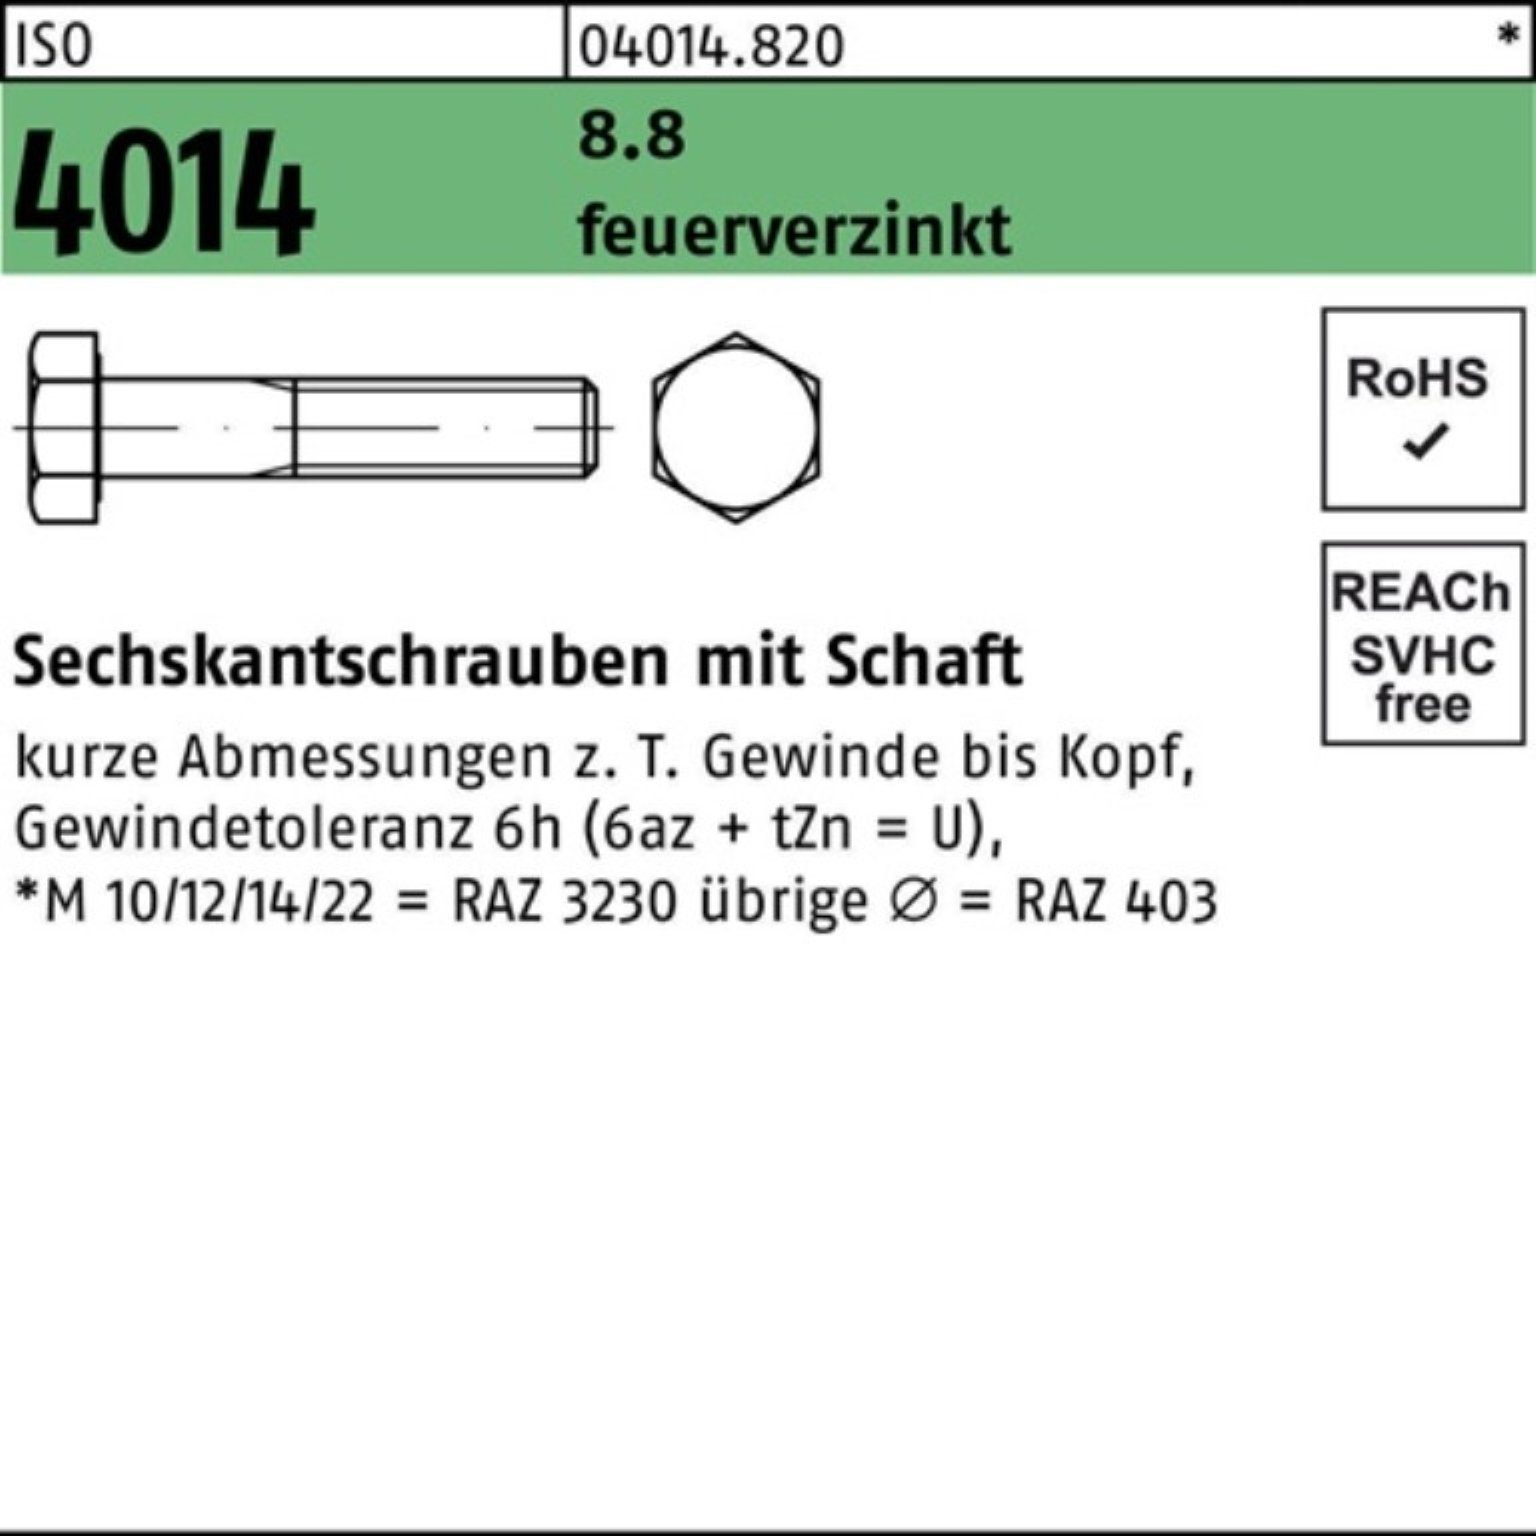 Bufab Sechskantschraube 100er Pack Sechskantschraube ISO 4014 Schaft M33x 130 8.8 feuerverz. 1